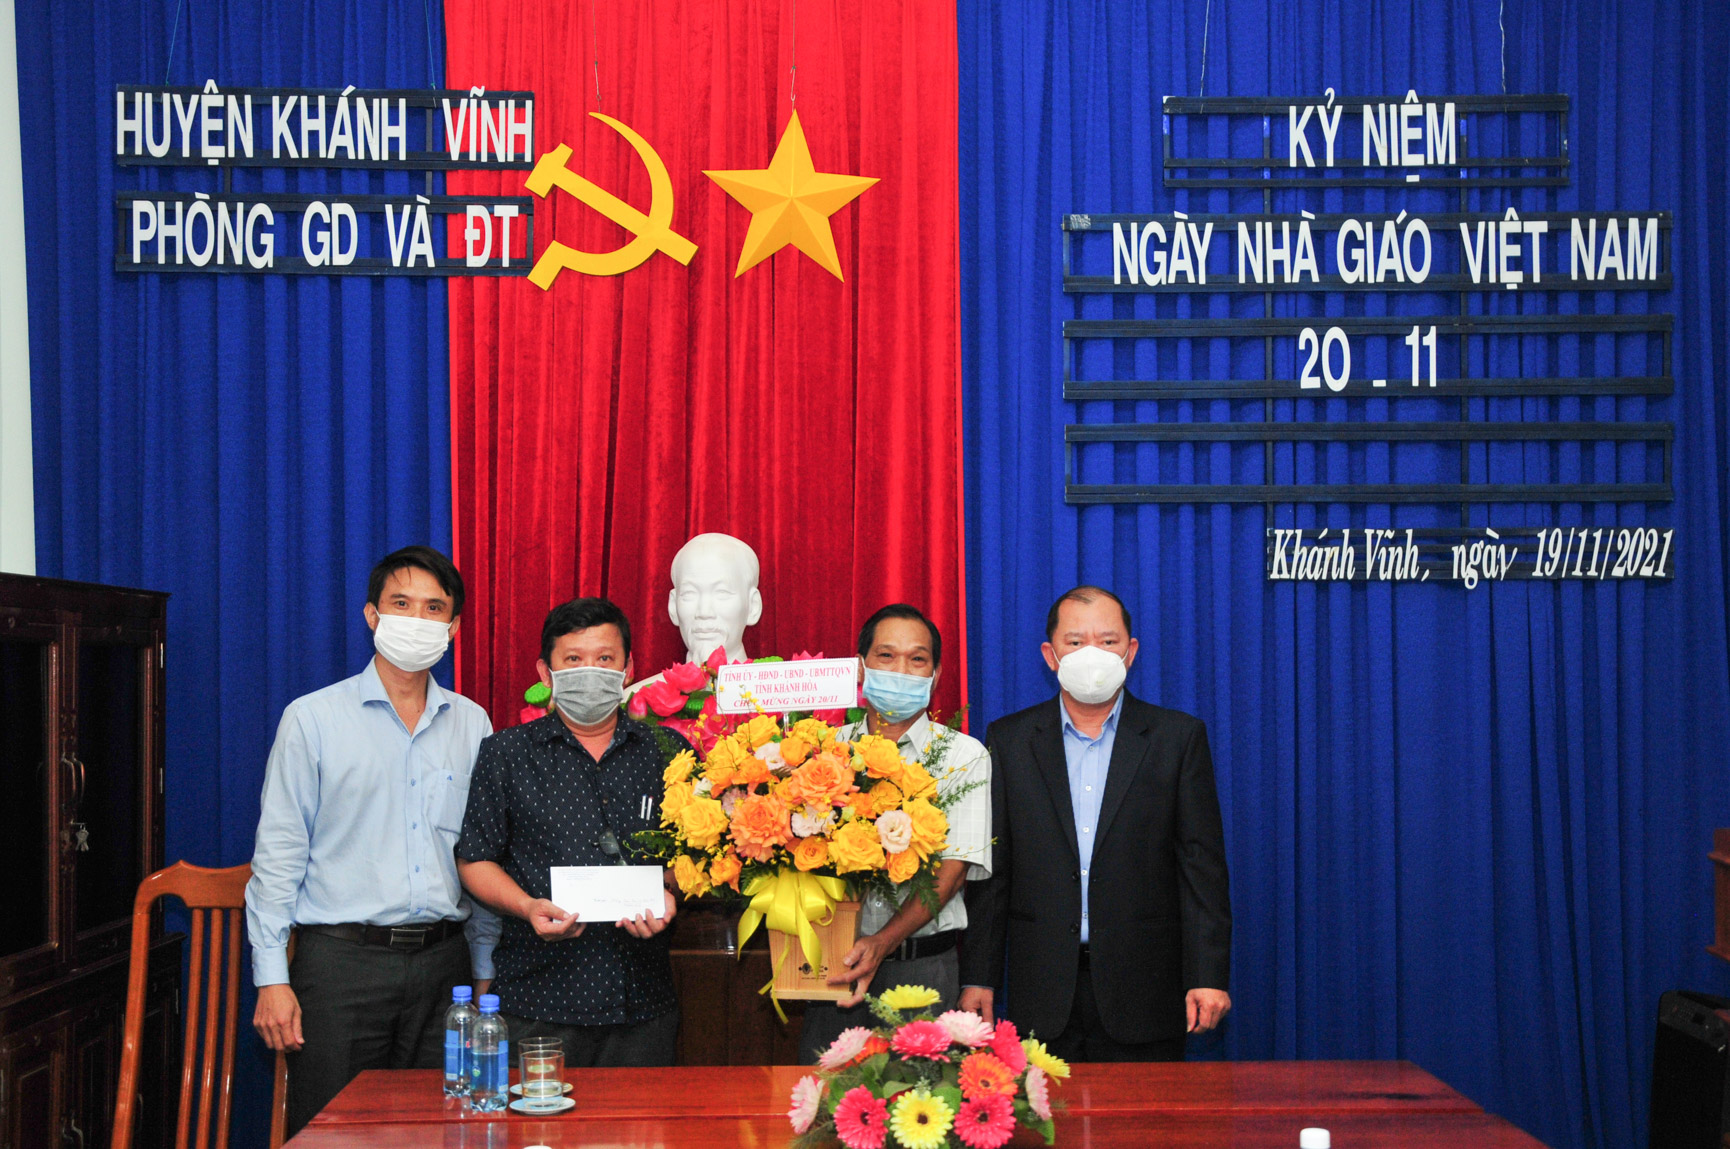 Đồng chí Nguyễn Anh Tuấn (bìa phải) tặng hoa và quà chúc mừng Phòng Giáo dục và Đào tạo huyện Khánh Vĩnh